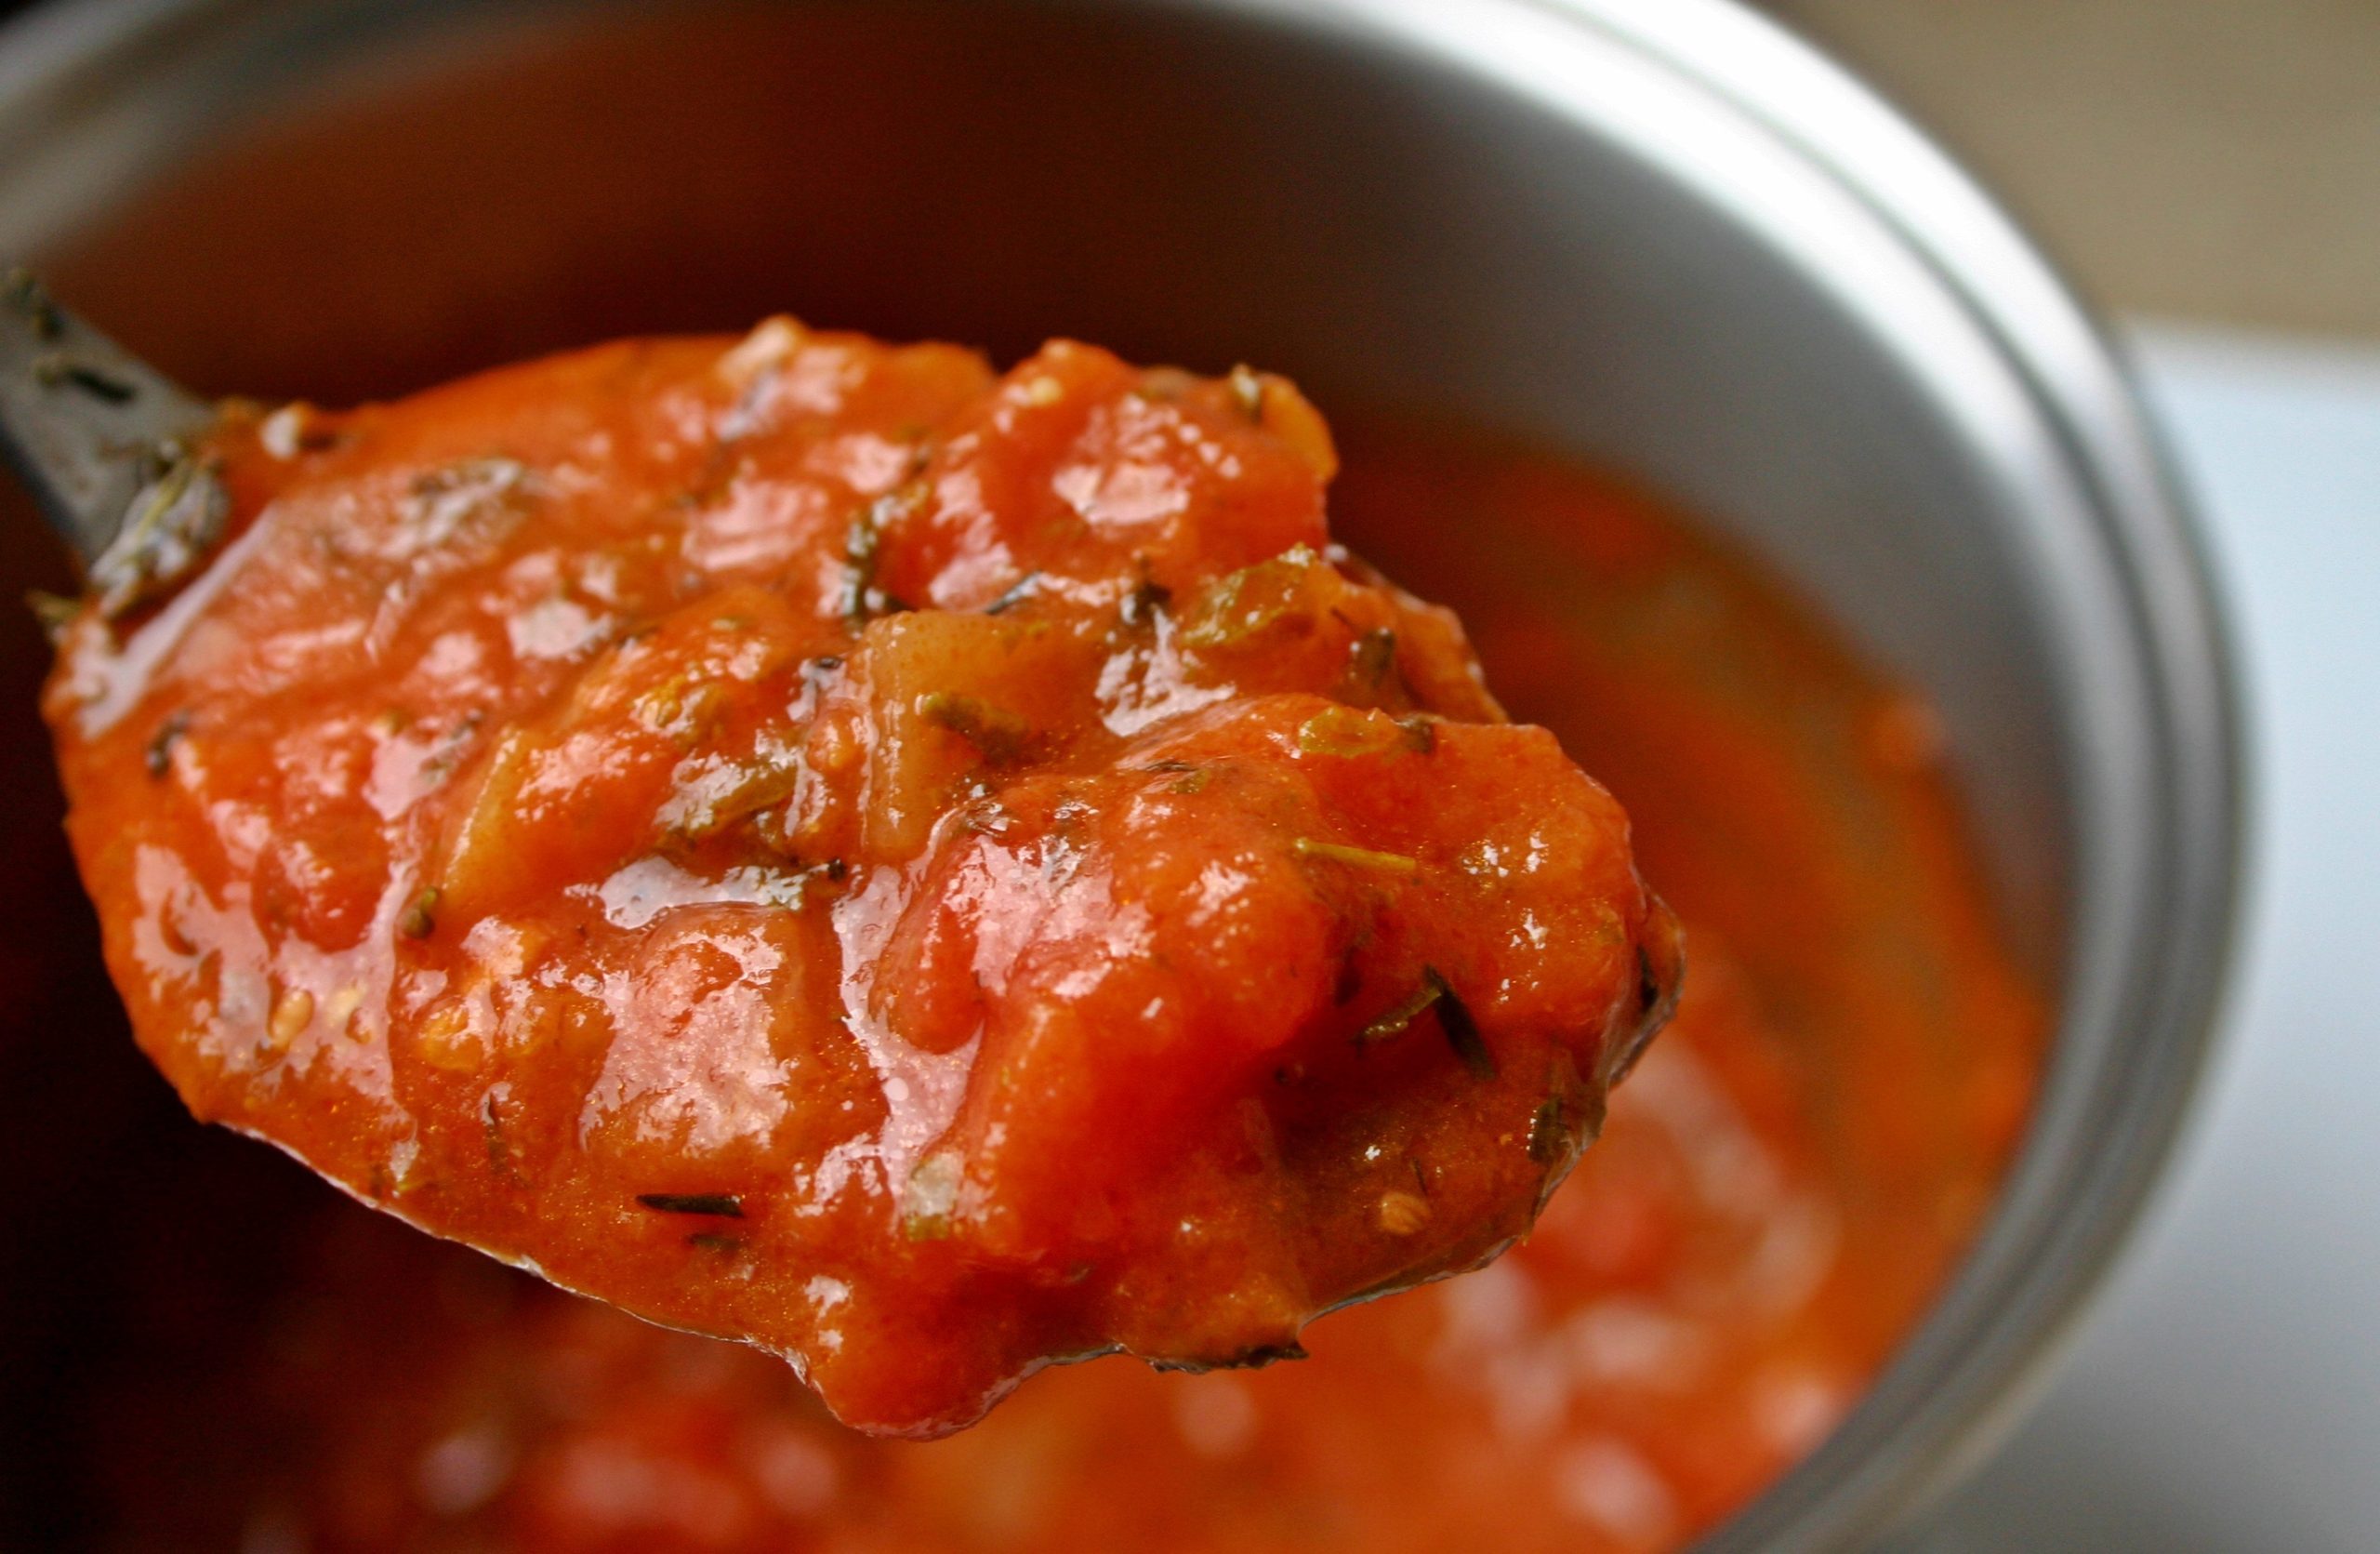 podliv kak v stolovoj s tomatnoj pastoj poshagovyj recept 41889fb Підлив, як в їдальні з томатною пастою: покроковий рецепт